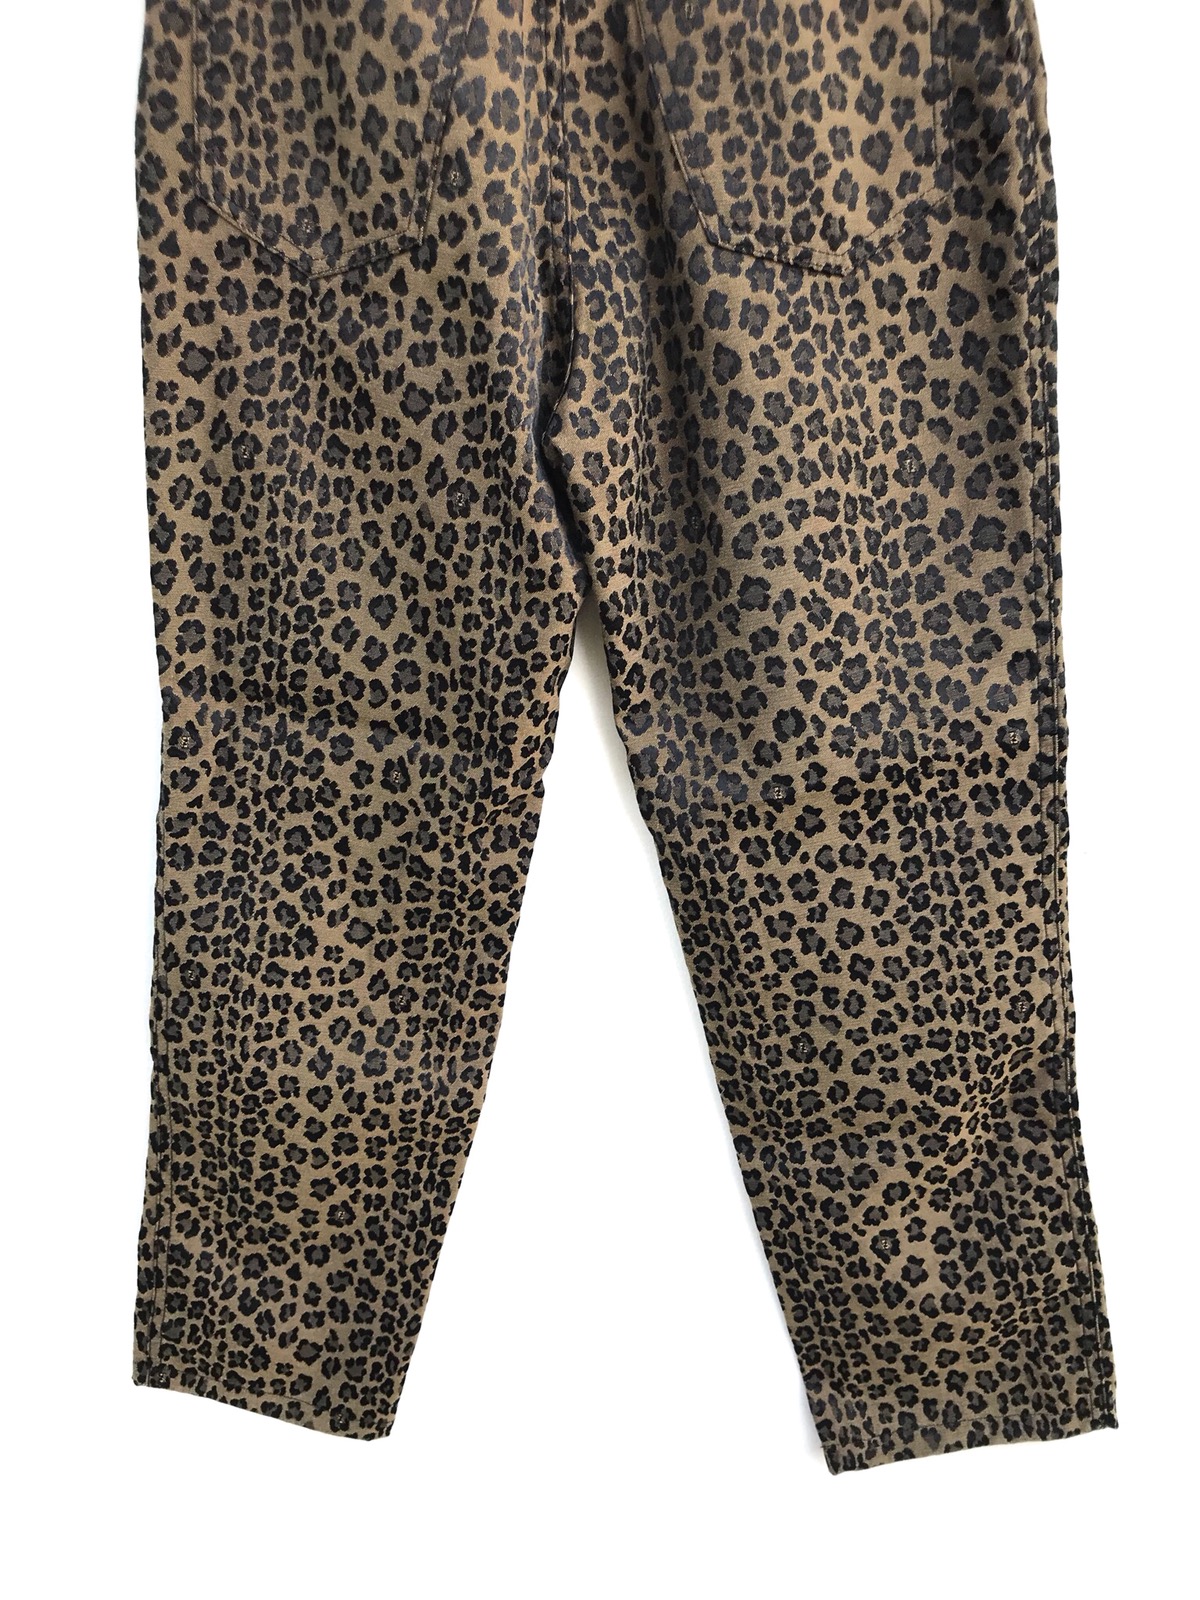 Authentic Fendi Leopard Print Trousers Pants - 9